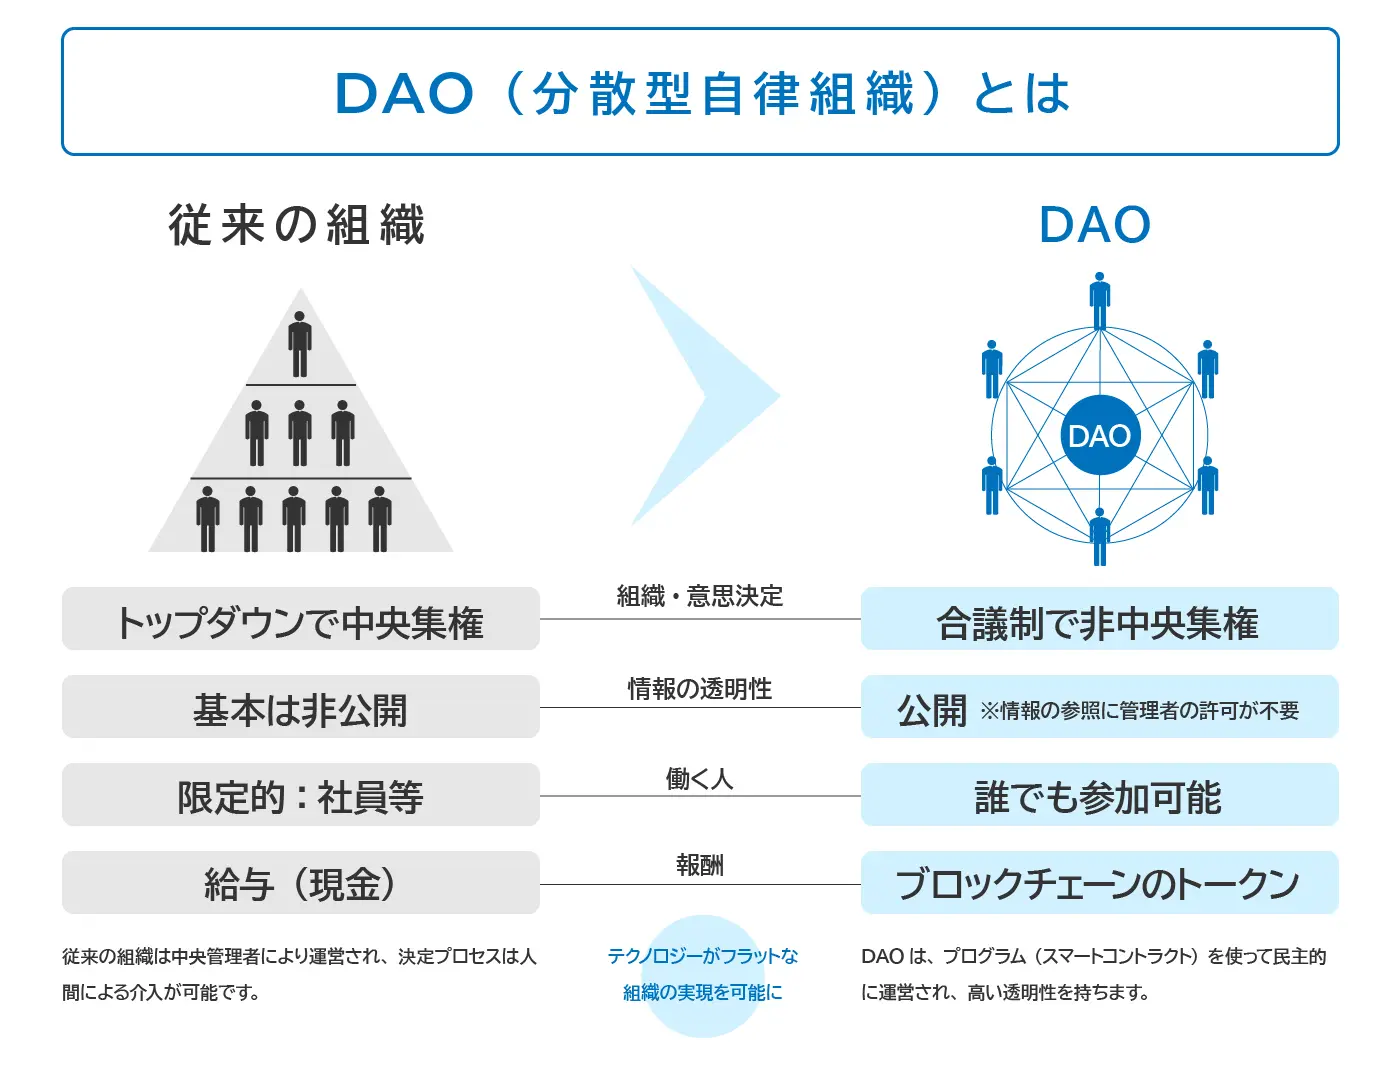 Web3.0におけるDAO（分散型自律組織）について初心者向けに分かりやすく説明した図版